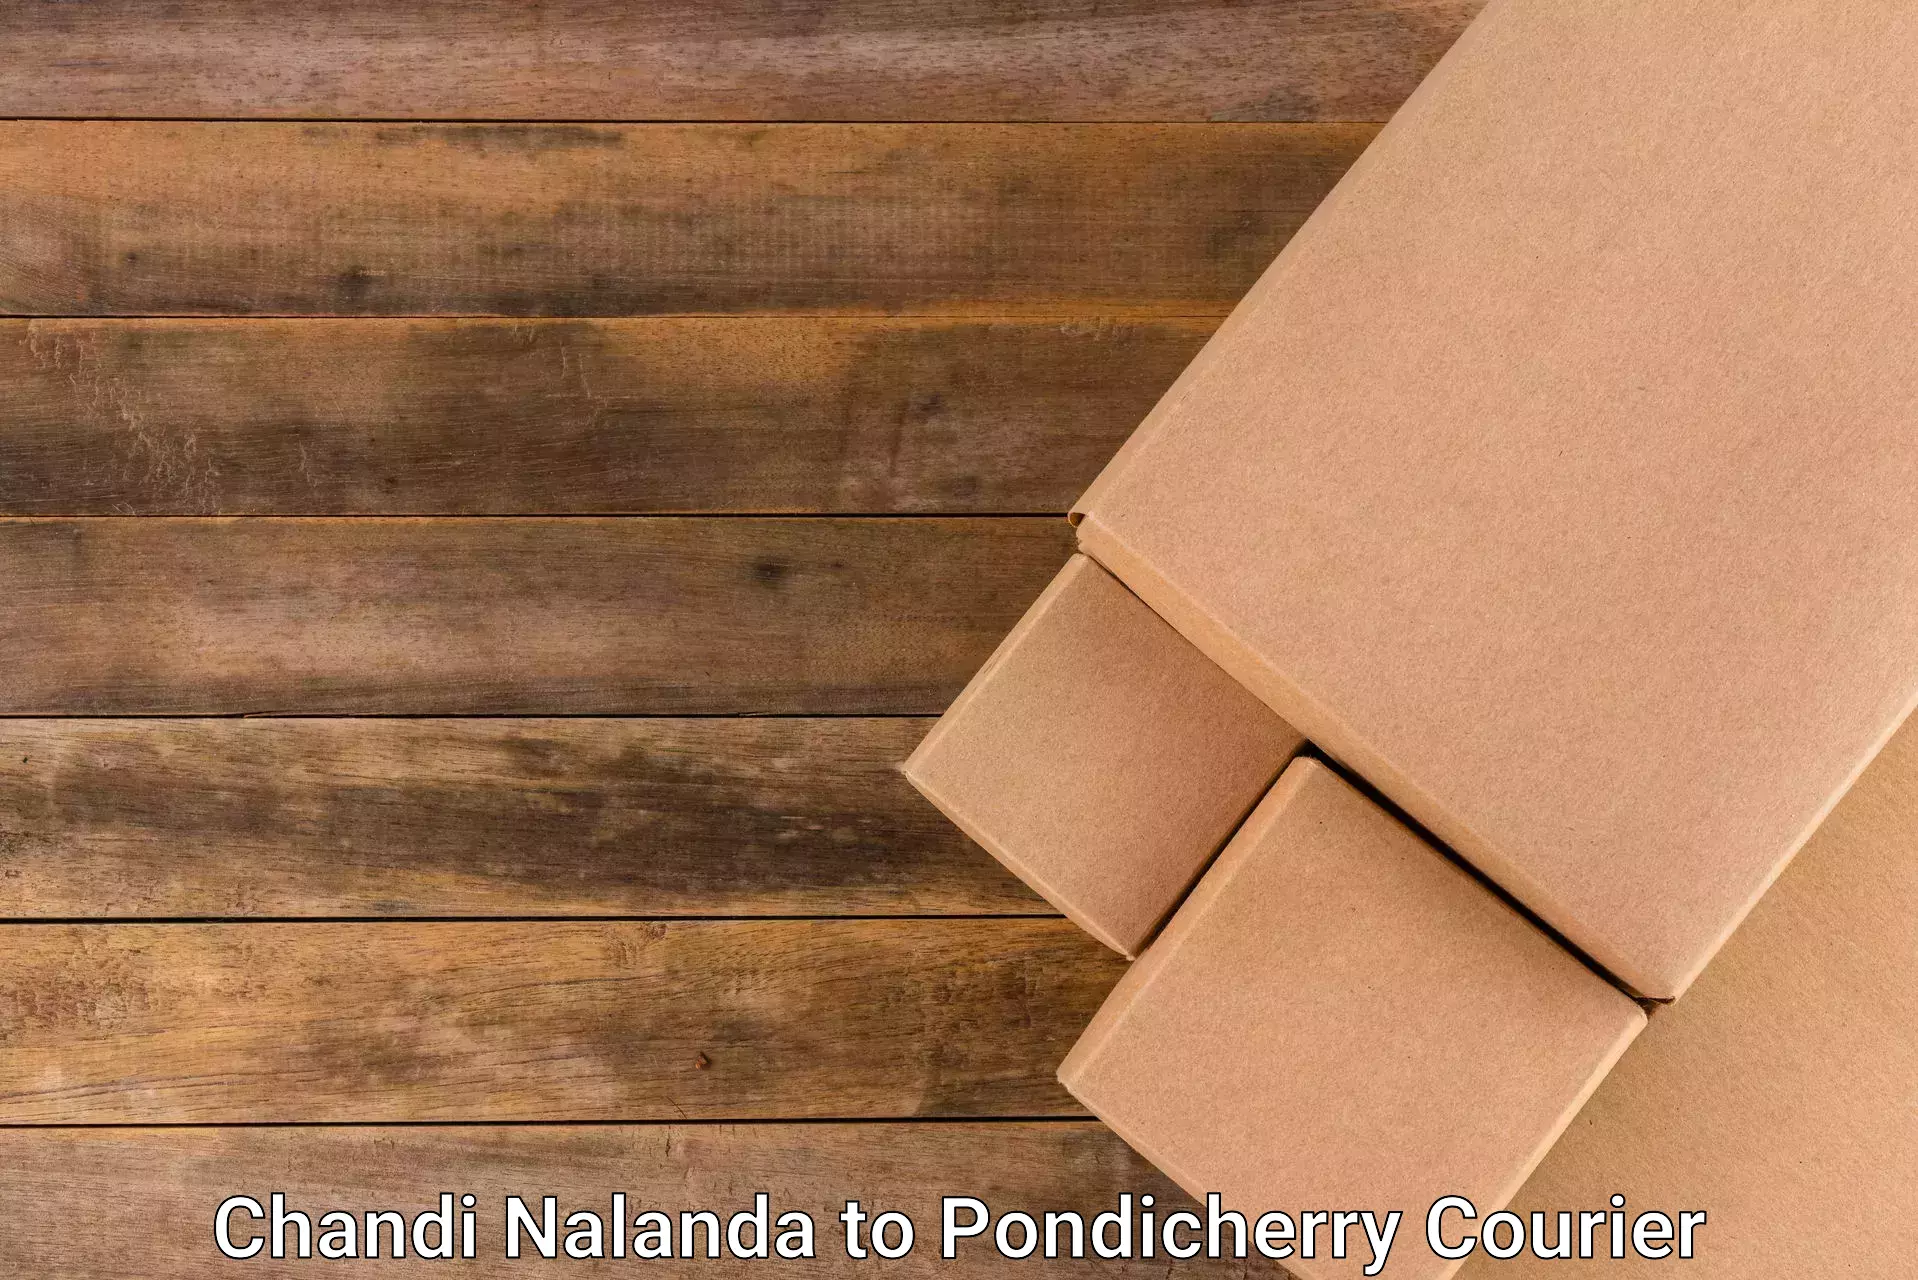 Nationwide parcel services Chandi Nalanda to Metttupalayam